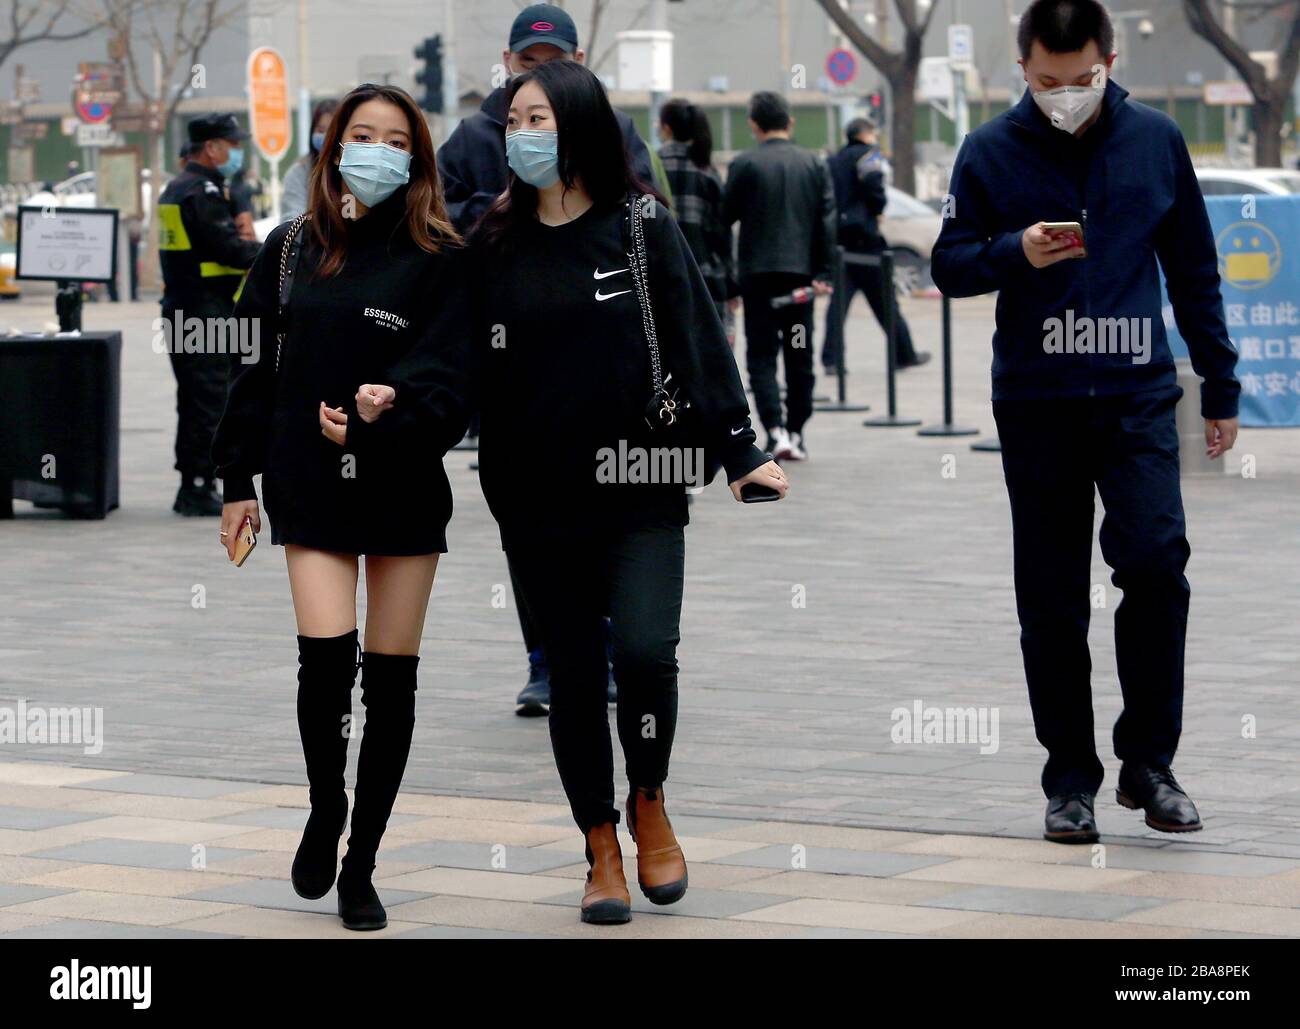 Peking, China. März 2020. Chinesen tragen immer noch schützende Gesichtsmasken, während sie in der Innenstadt spazieren, da die Bedrohung durch das tödliche Coronavirus (Covid-19) am Donnerstag, 26. März 2020 in Peking verblasst. Chinas Hauptstadt kehrt langsam in den Normalzustand zurück, während die Zahl der neuen Coronavirus-Fälle und die Rückkehr des Frühlingswetters stark gefallen sind. Foto von Stephen Shaver/UPI Credit: UPI/Alamy Live News Stockfoto